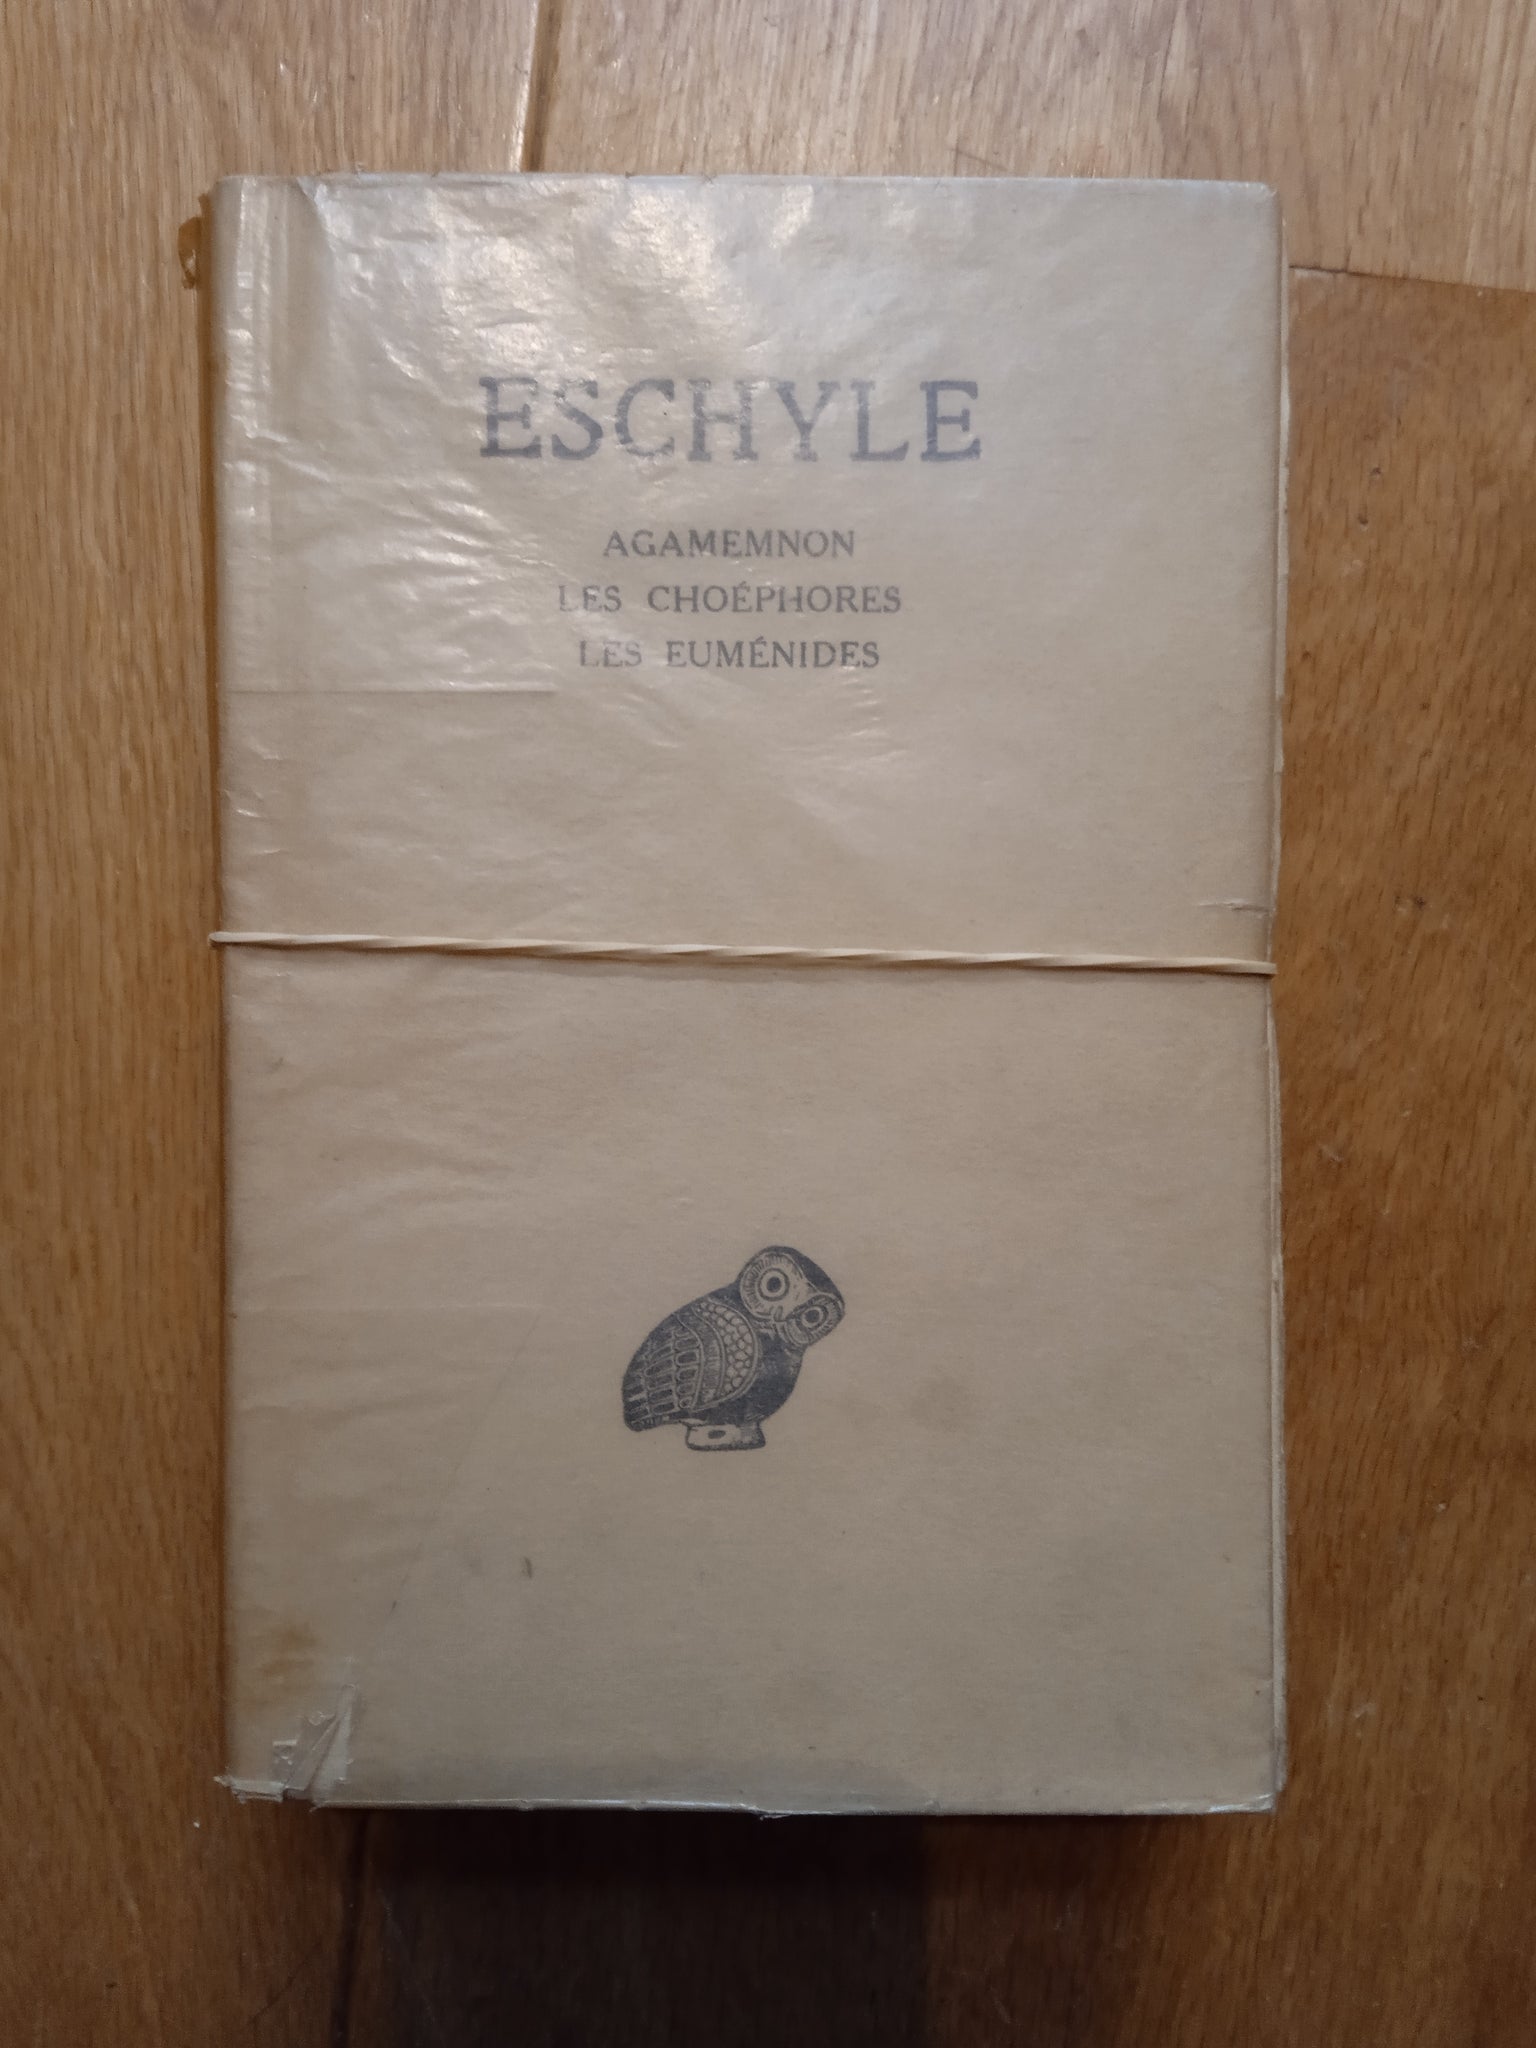 Eschyle - Les Tragédies. 2 Volumes.